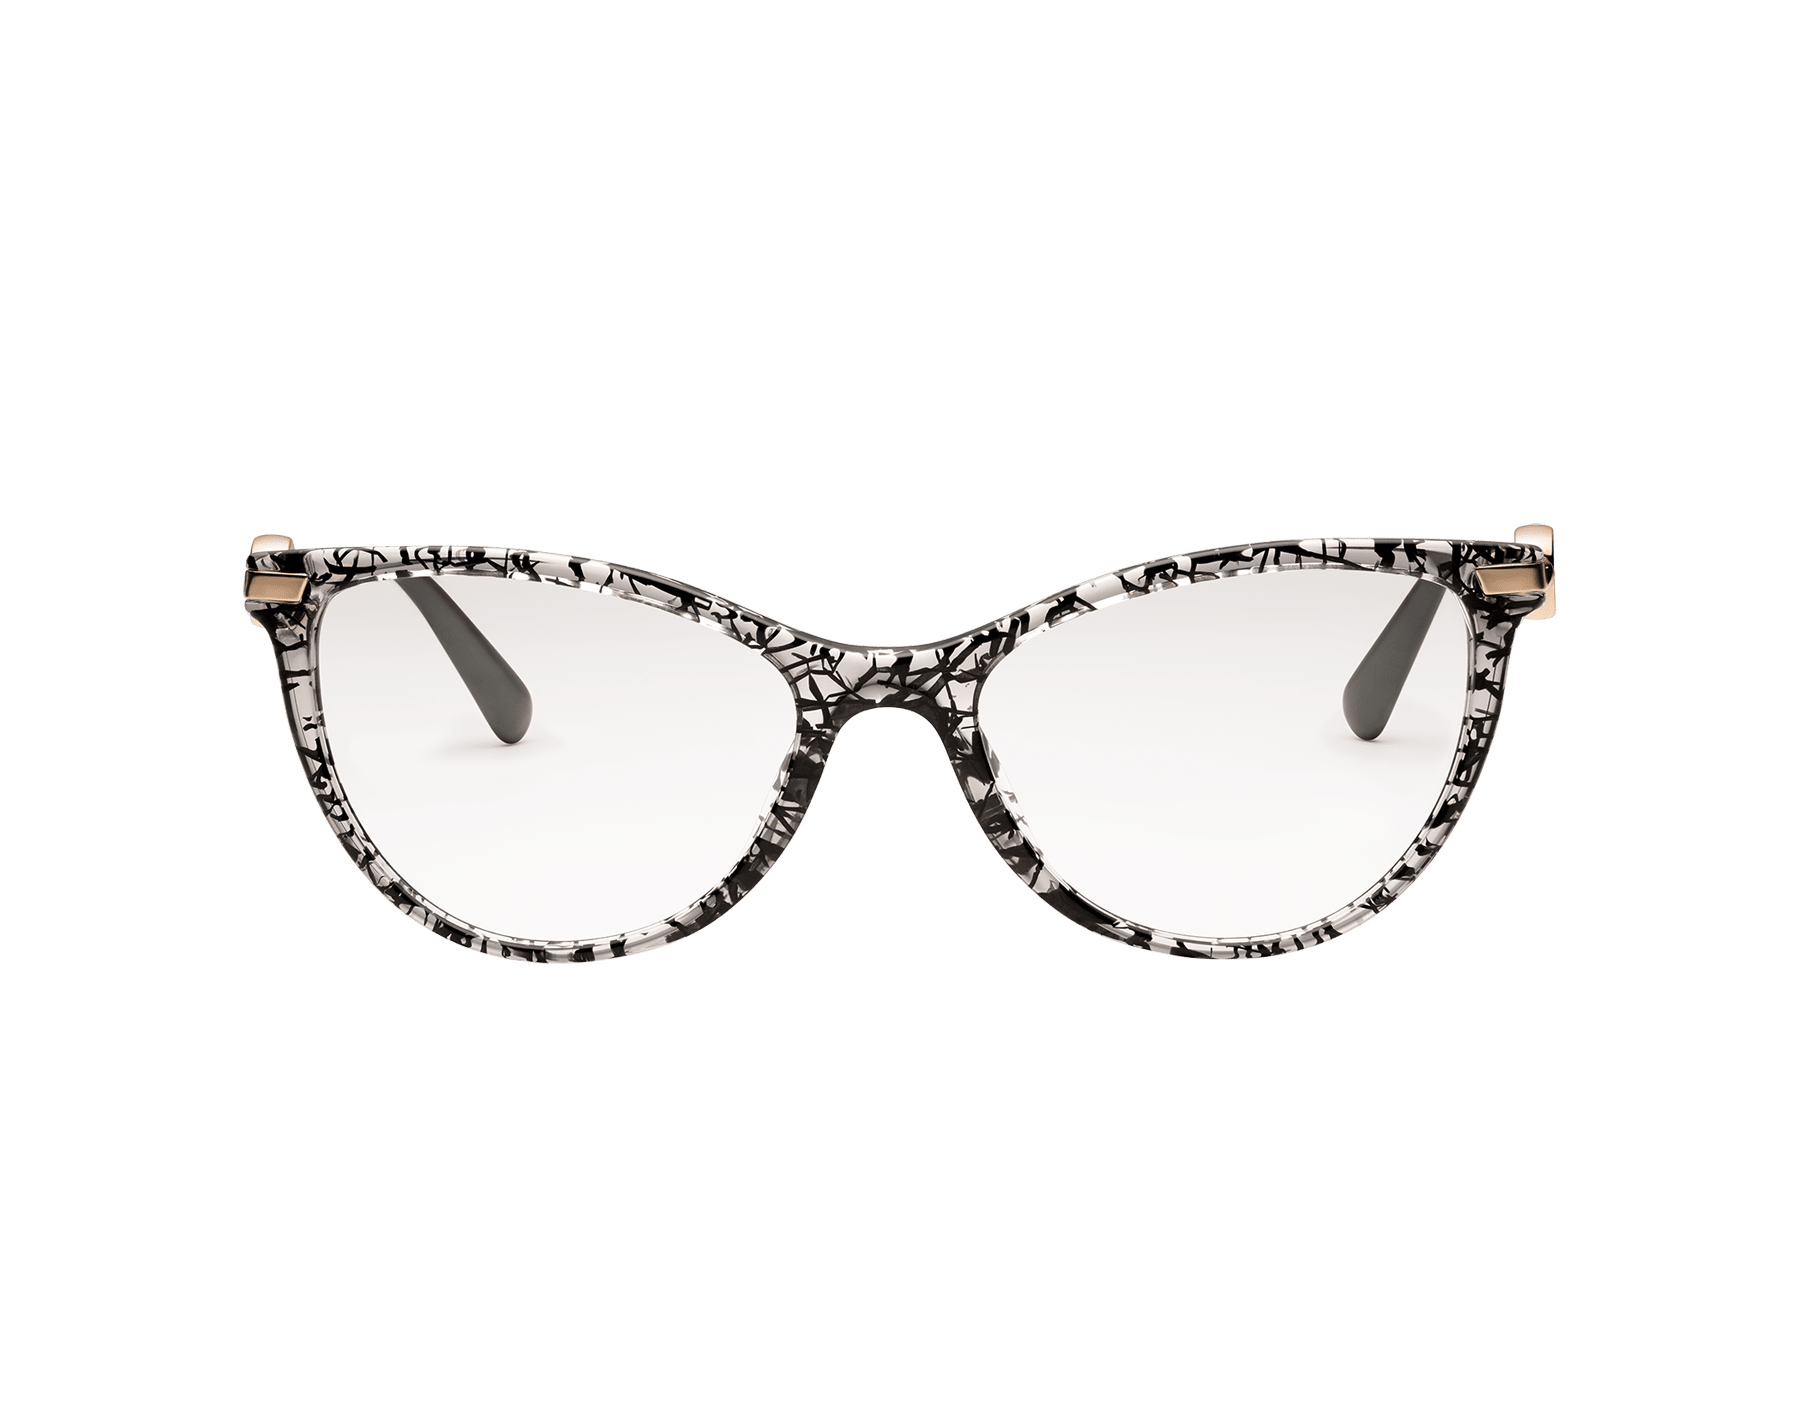 bvlgari cat eye glasses